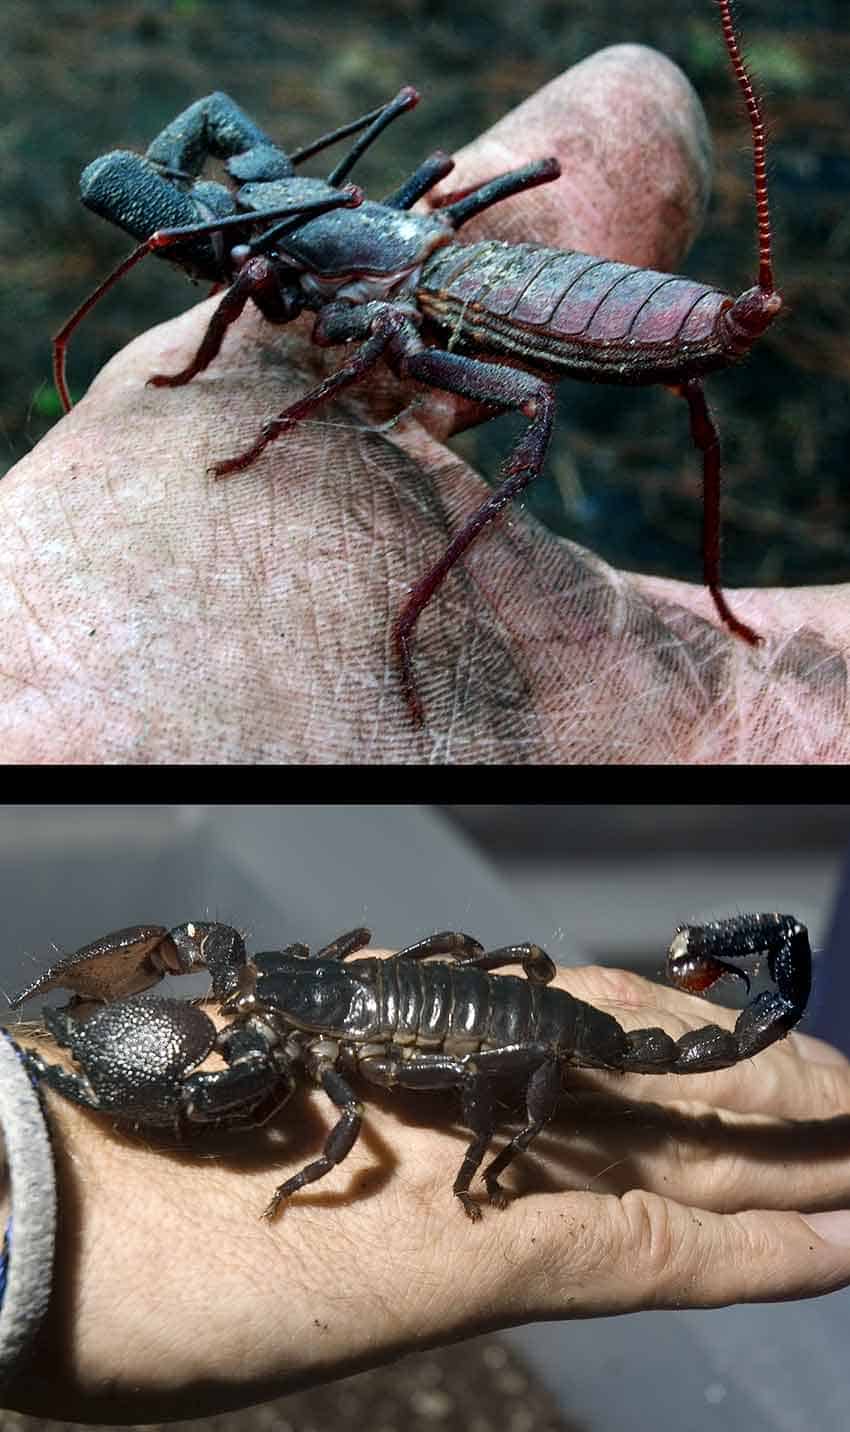 vinagrillo compared with emperor scorpion